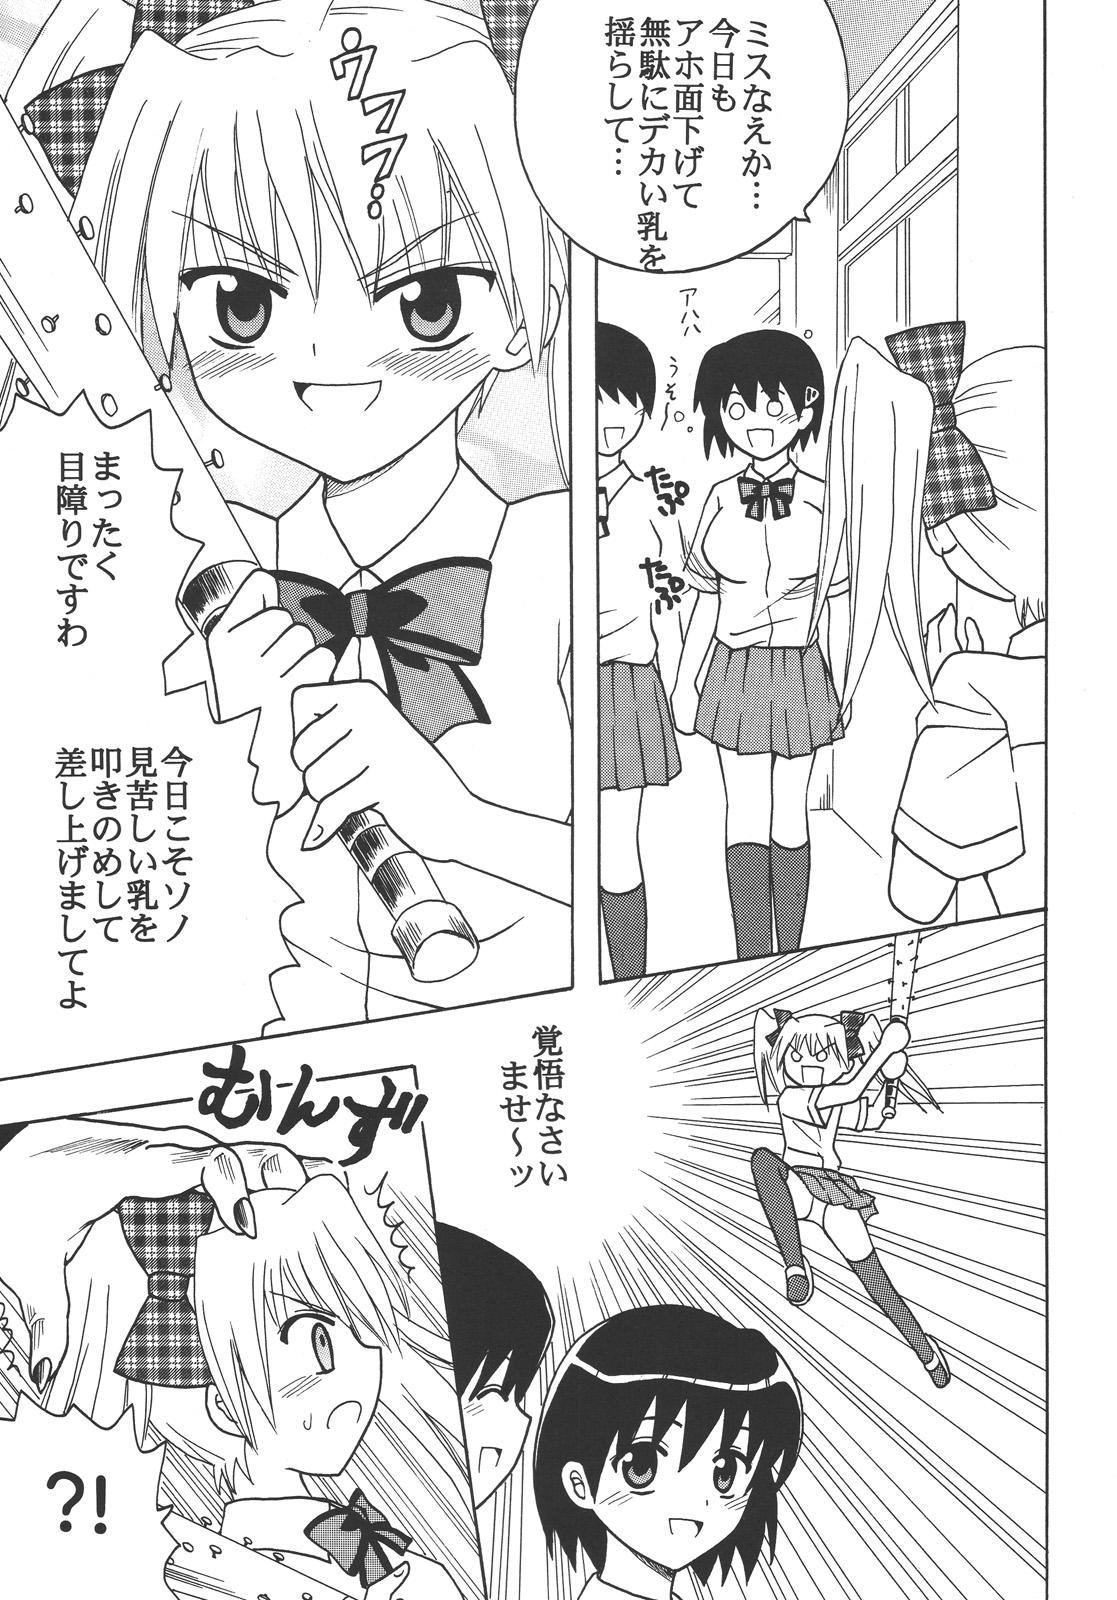 Bbw Nakadashi Maid no Hinkaku 3 - Kamen no maid guy Casting - Page 4